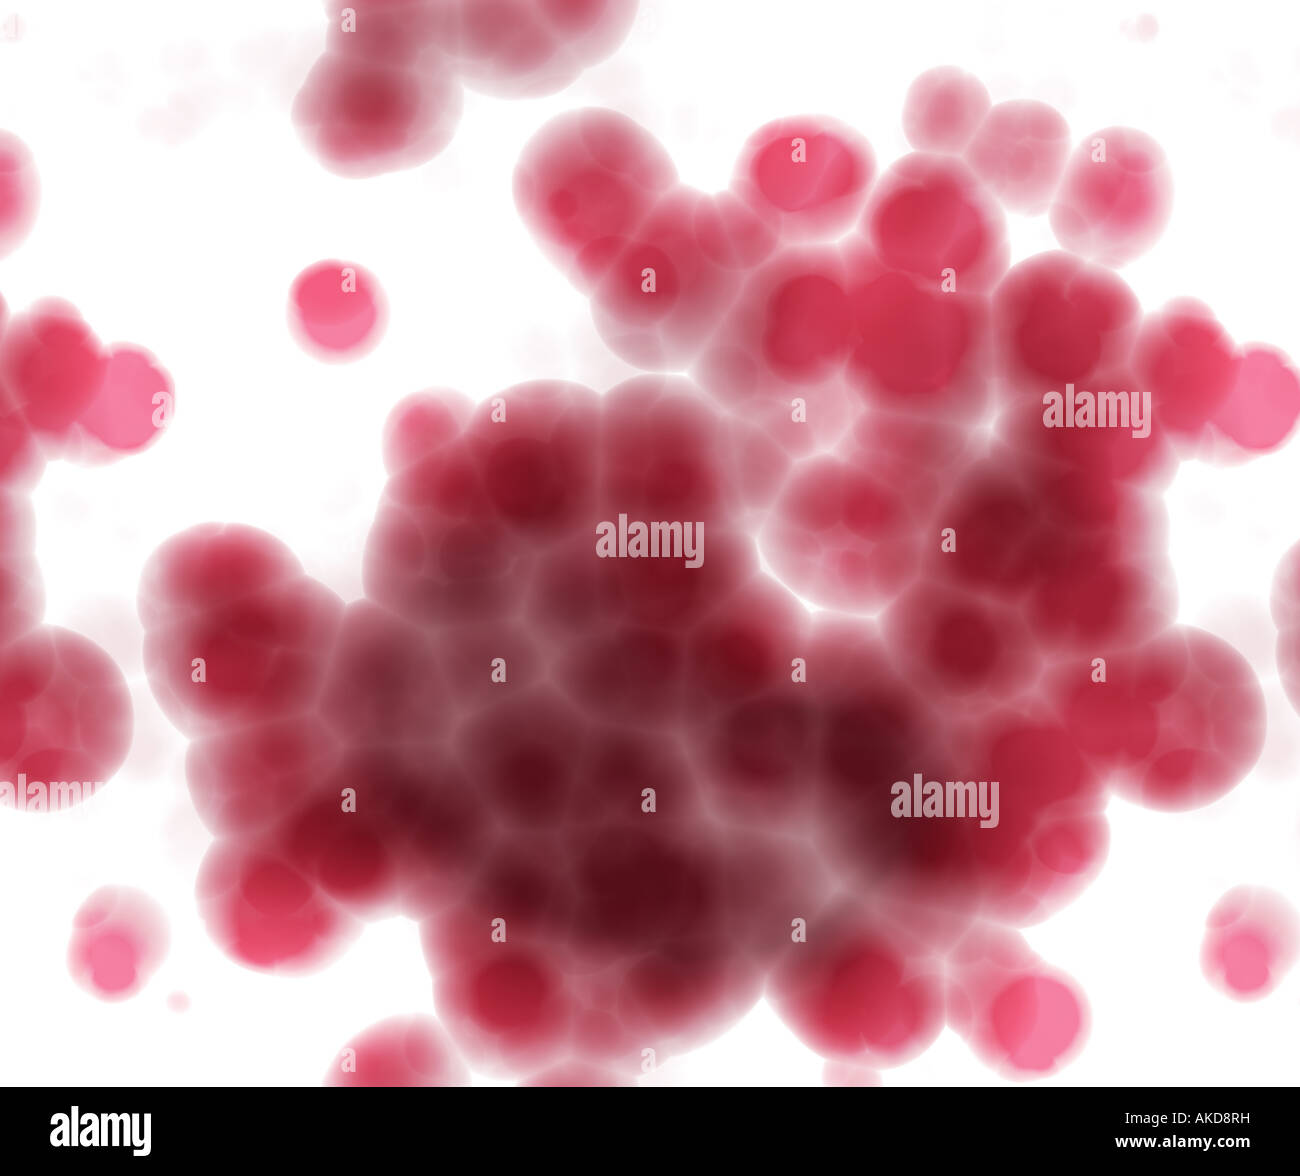 hell beleuchtete Erythrozyten auf weißem Hintergrund unter dem Mikroskop  Stockfotografie - Alamy